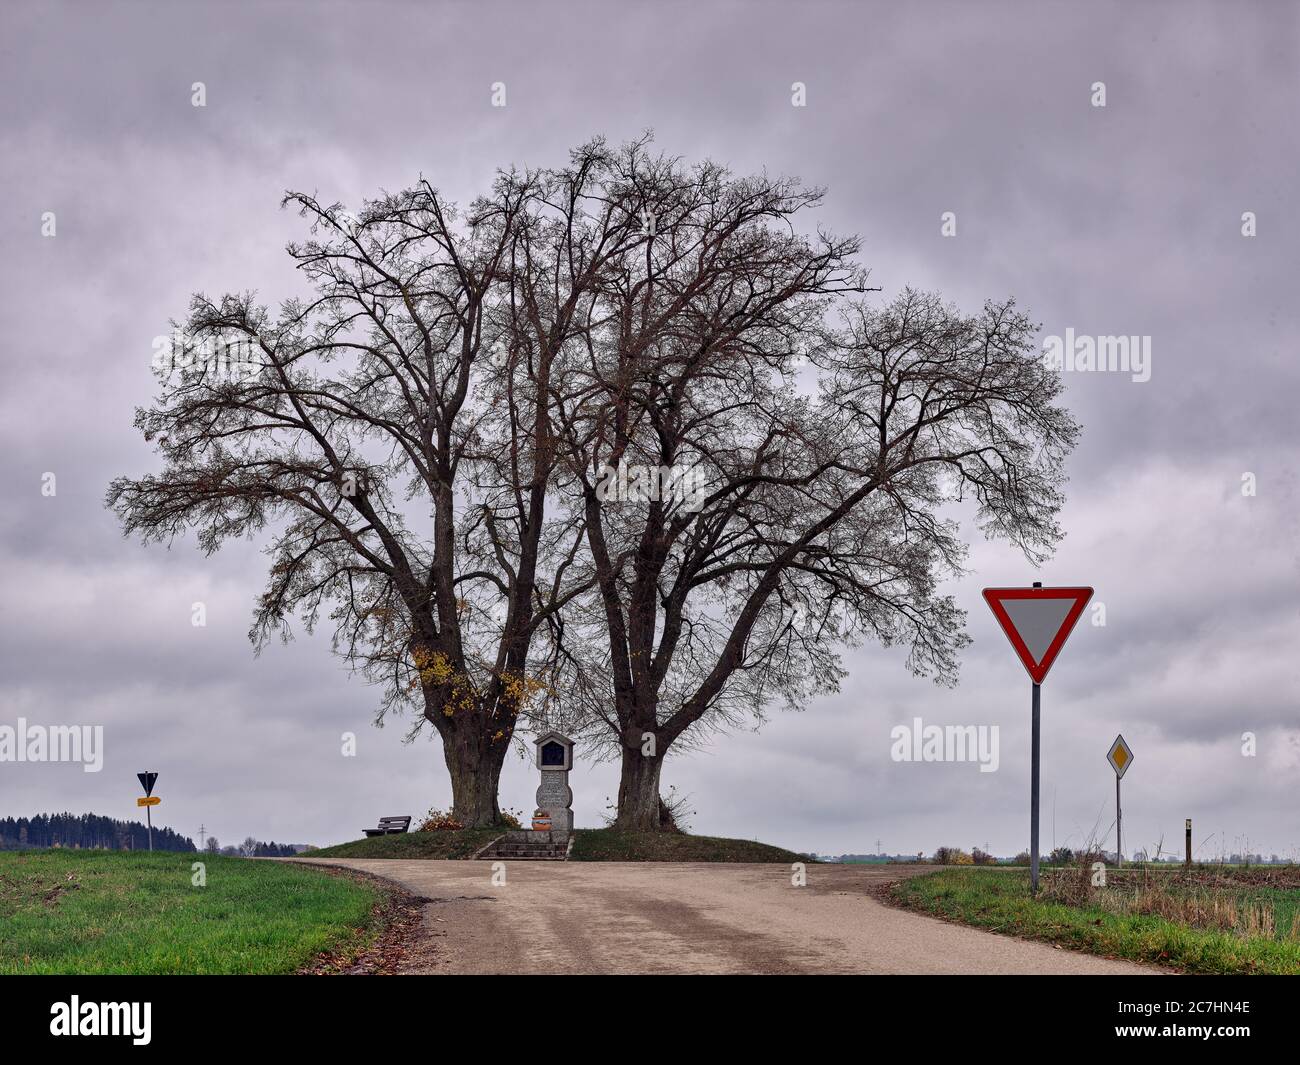 Baum, Baumgruppe, Kreuz, Gedenkstein, Straße, Verkehrszeichen, Herbst, Herbststimmung, Wolken Stockfoto